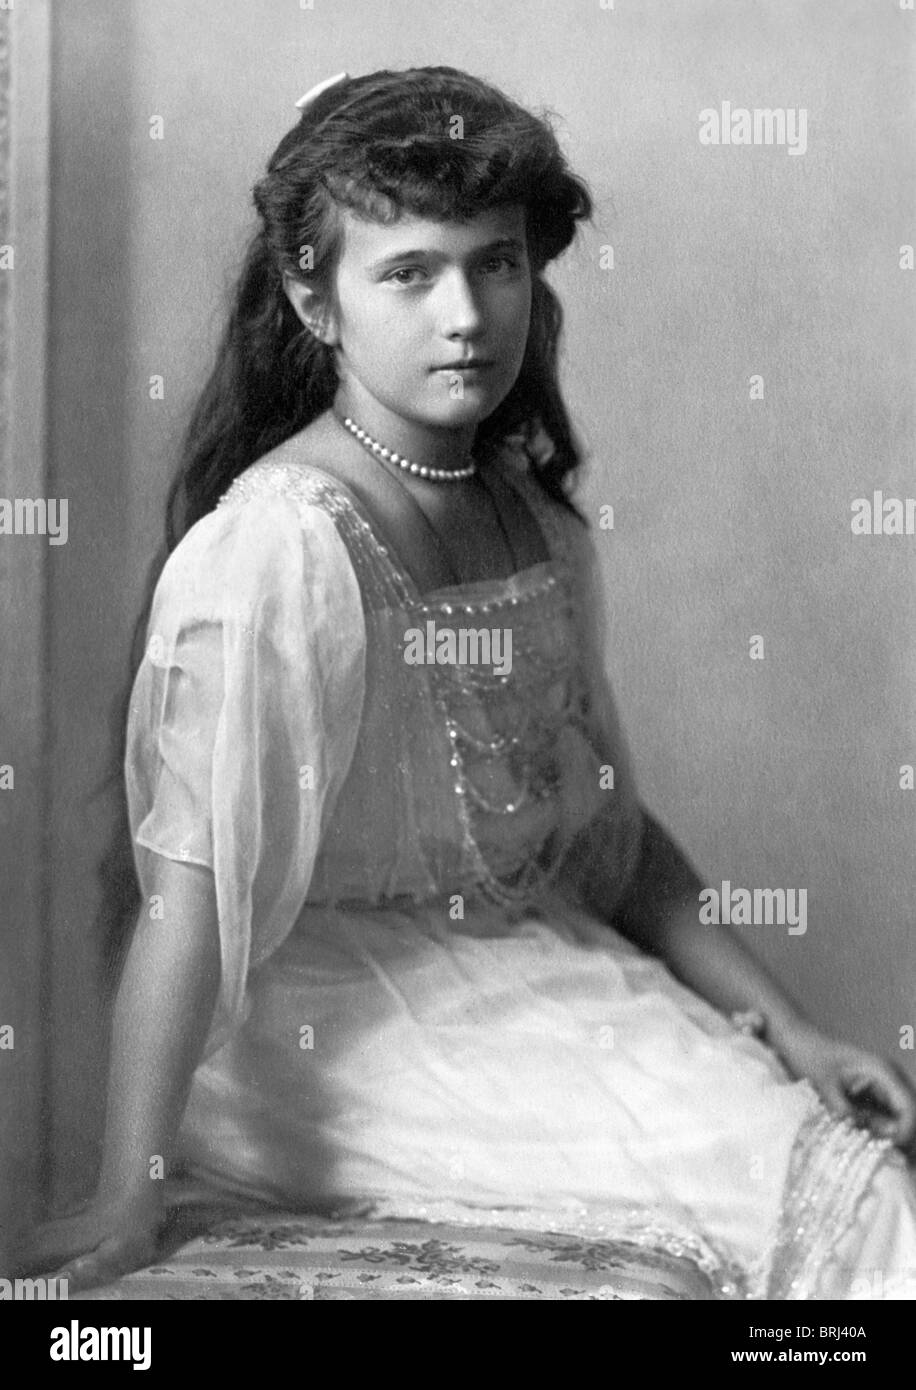 Ritratto c1915 della Granduchessa Anastasia Nikolaevna Romanov (1901 - 1918) - La più giovane figlia dello Zar Nicola II di Russia. Foto Stock